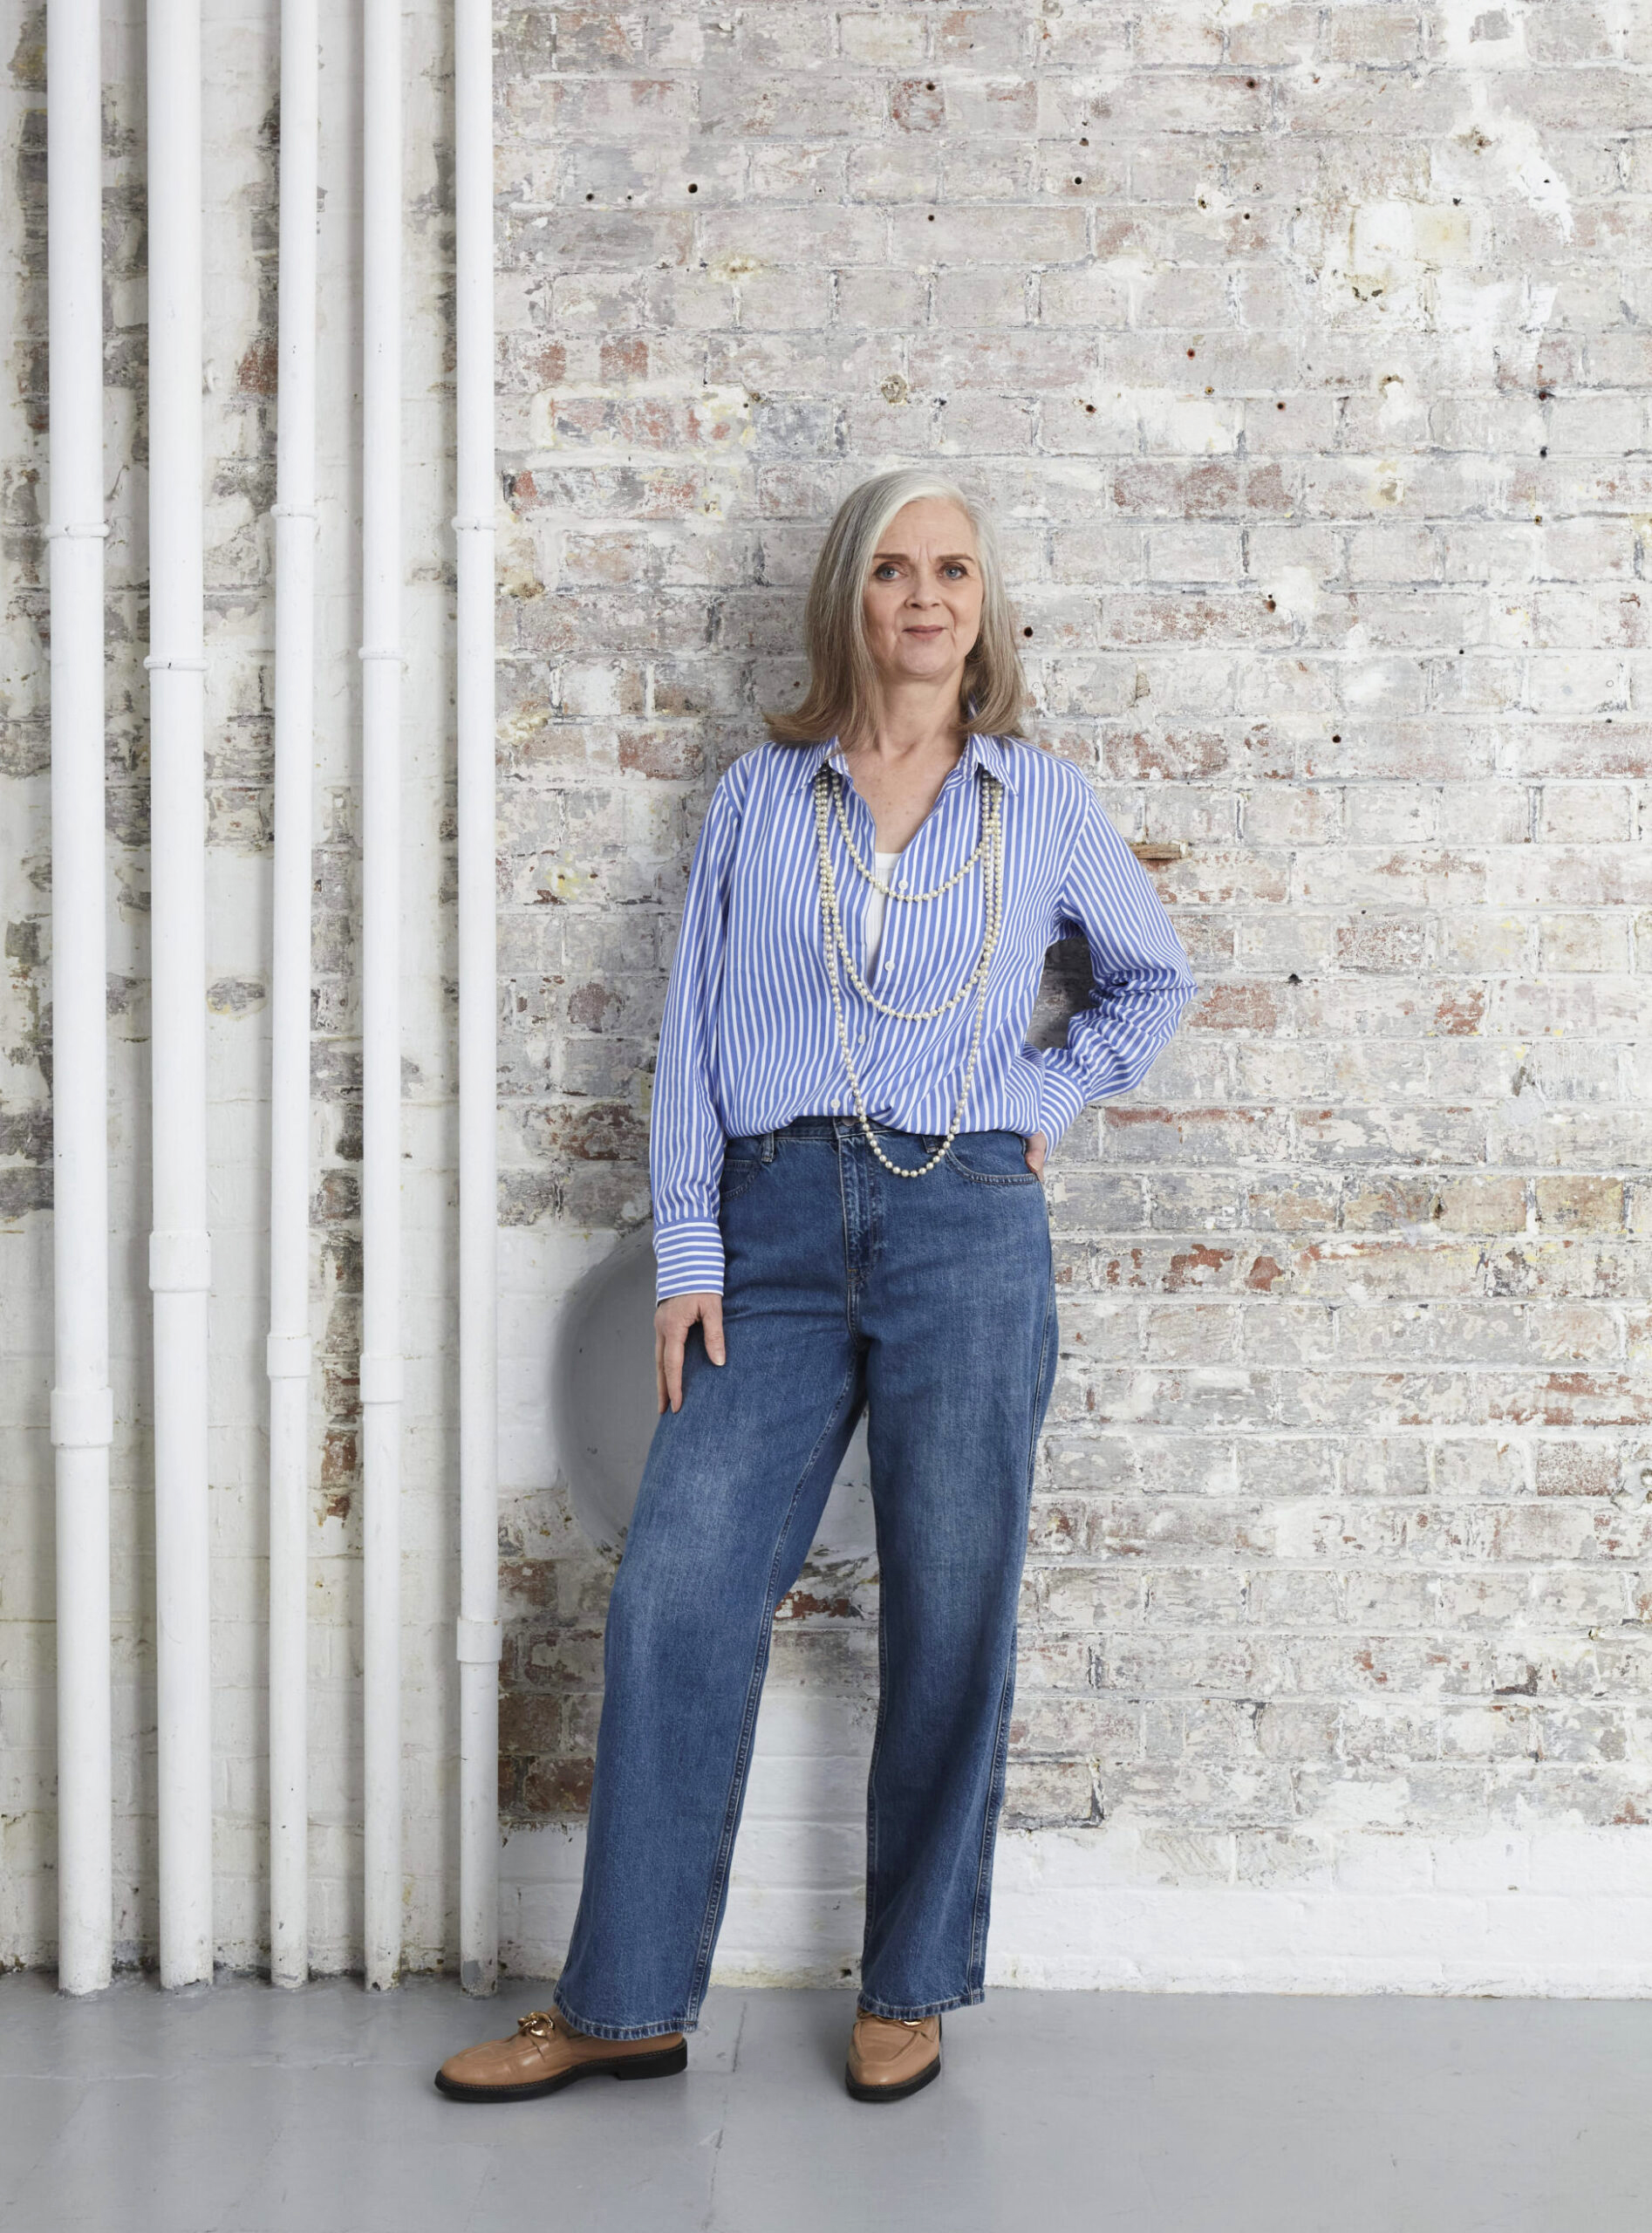 How To Wear Ecru Jeans 4 Ways - Classy Yet Trendy